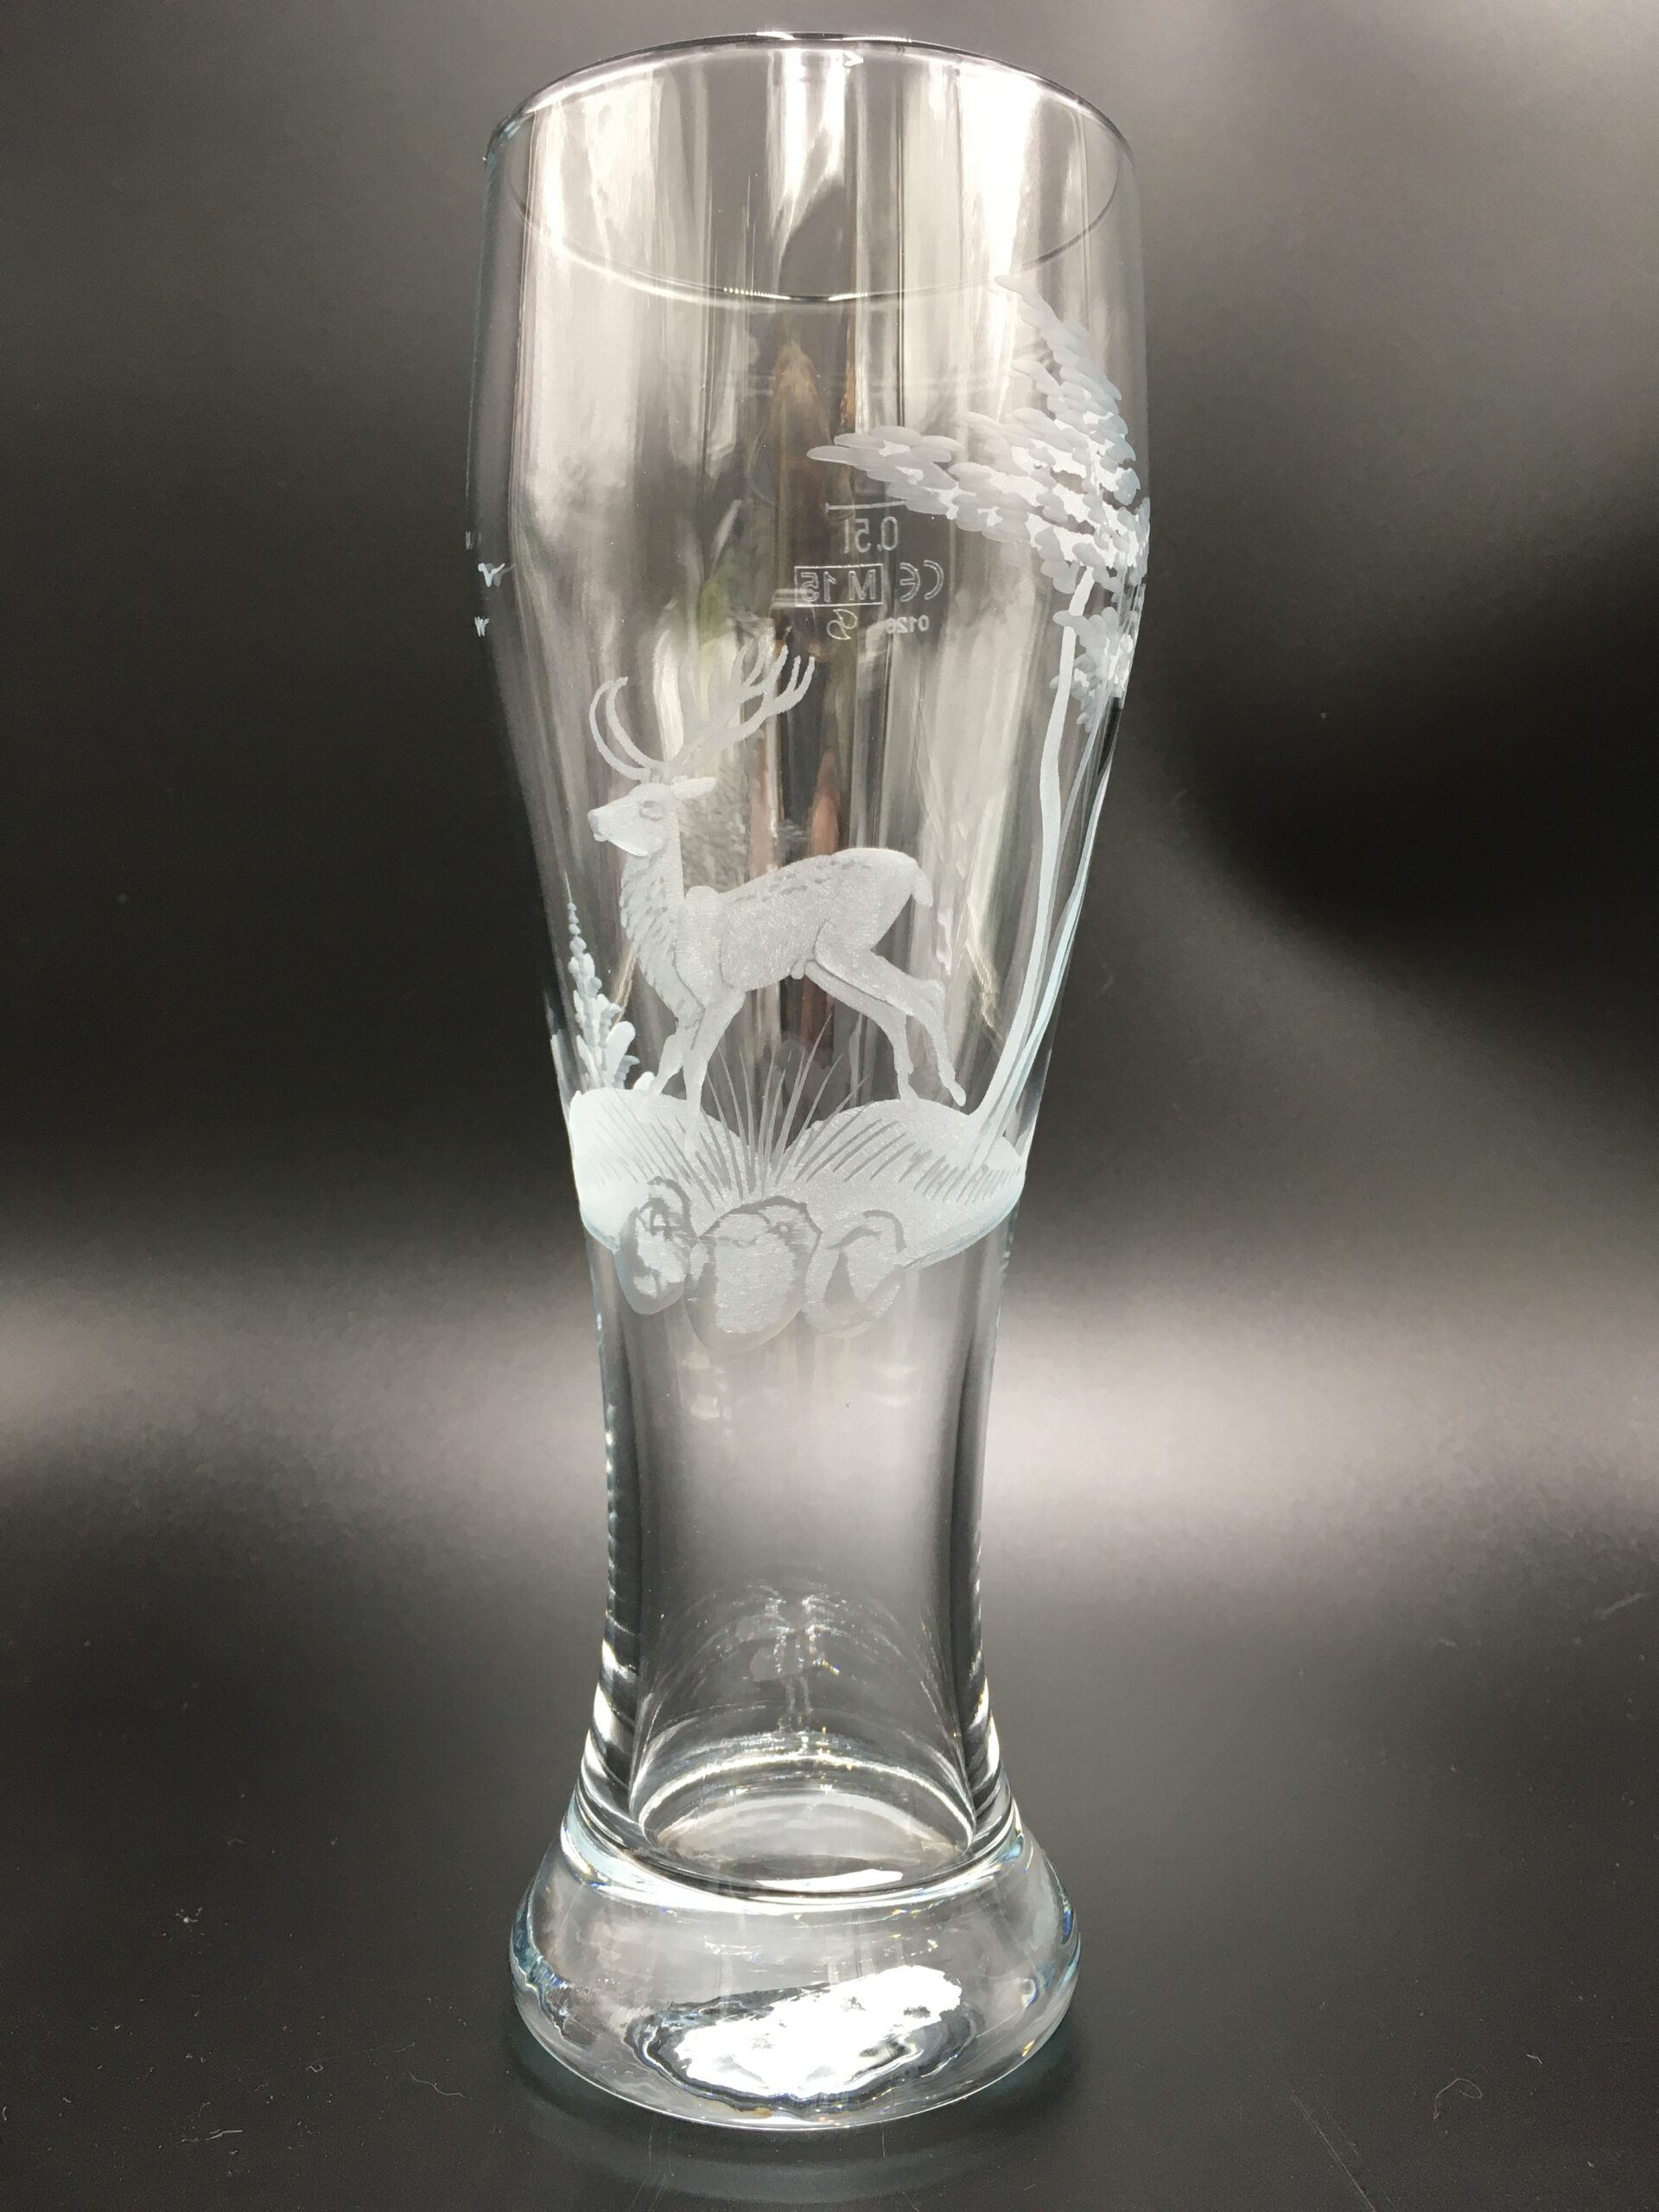 Schönes Weizenbierglas 0,5l Jagd “Hirsch” – Glasbläserei Claudia Schlenz